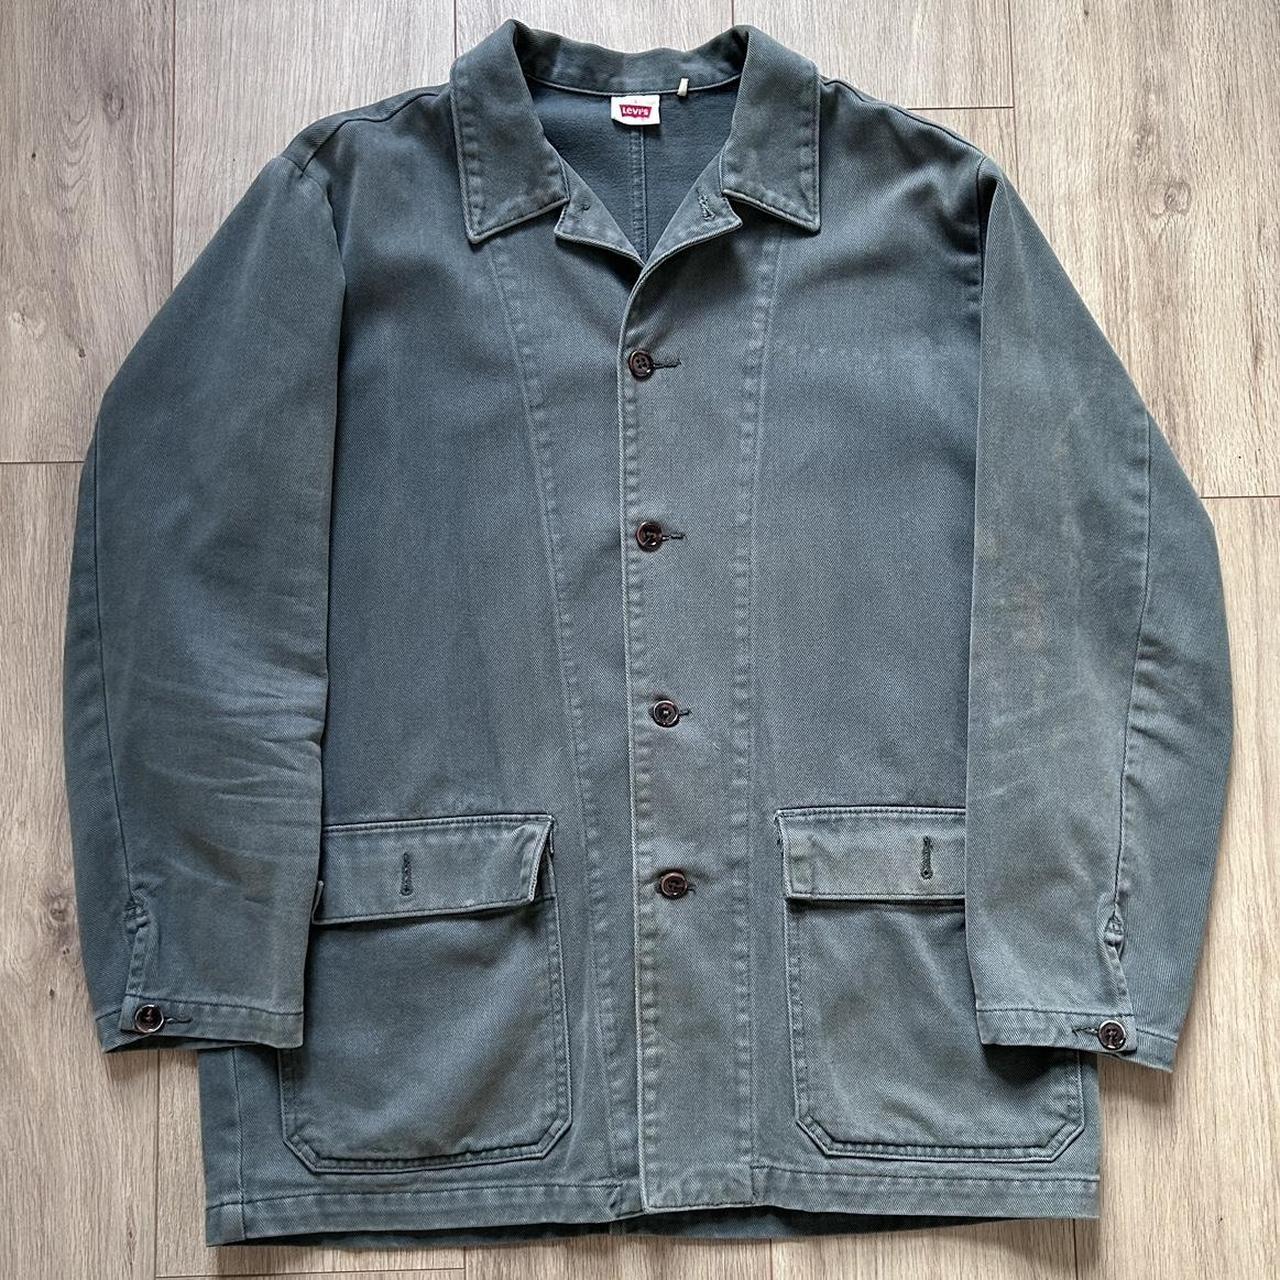 LVC Levi’s vintage clothing 1960’s surplus jacket,... - Depop